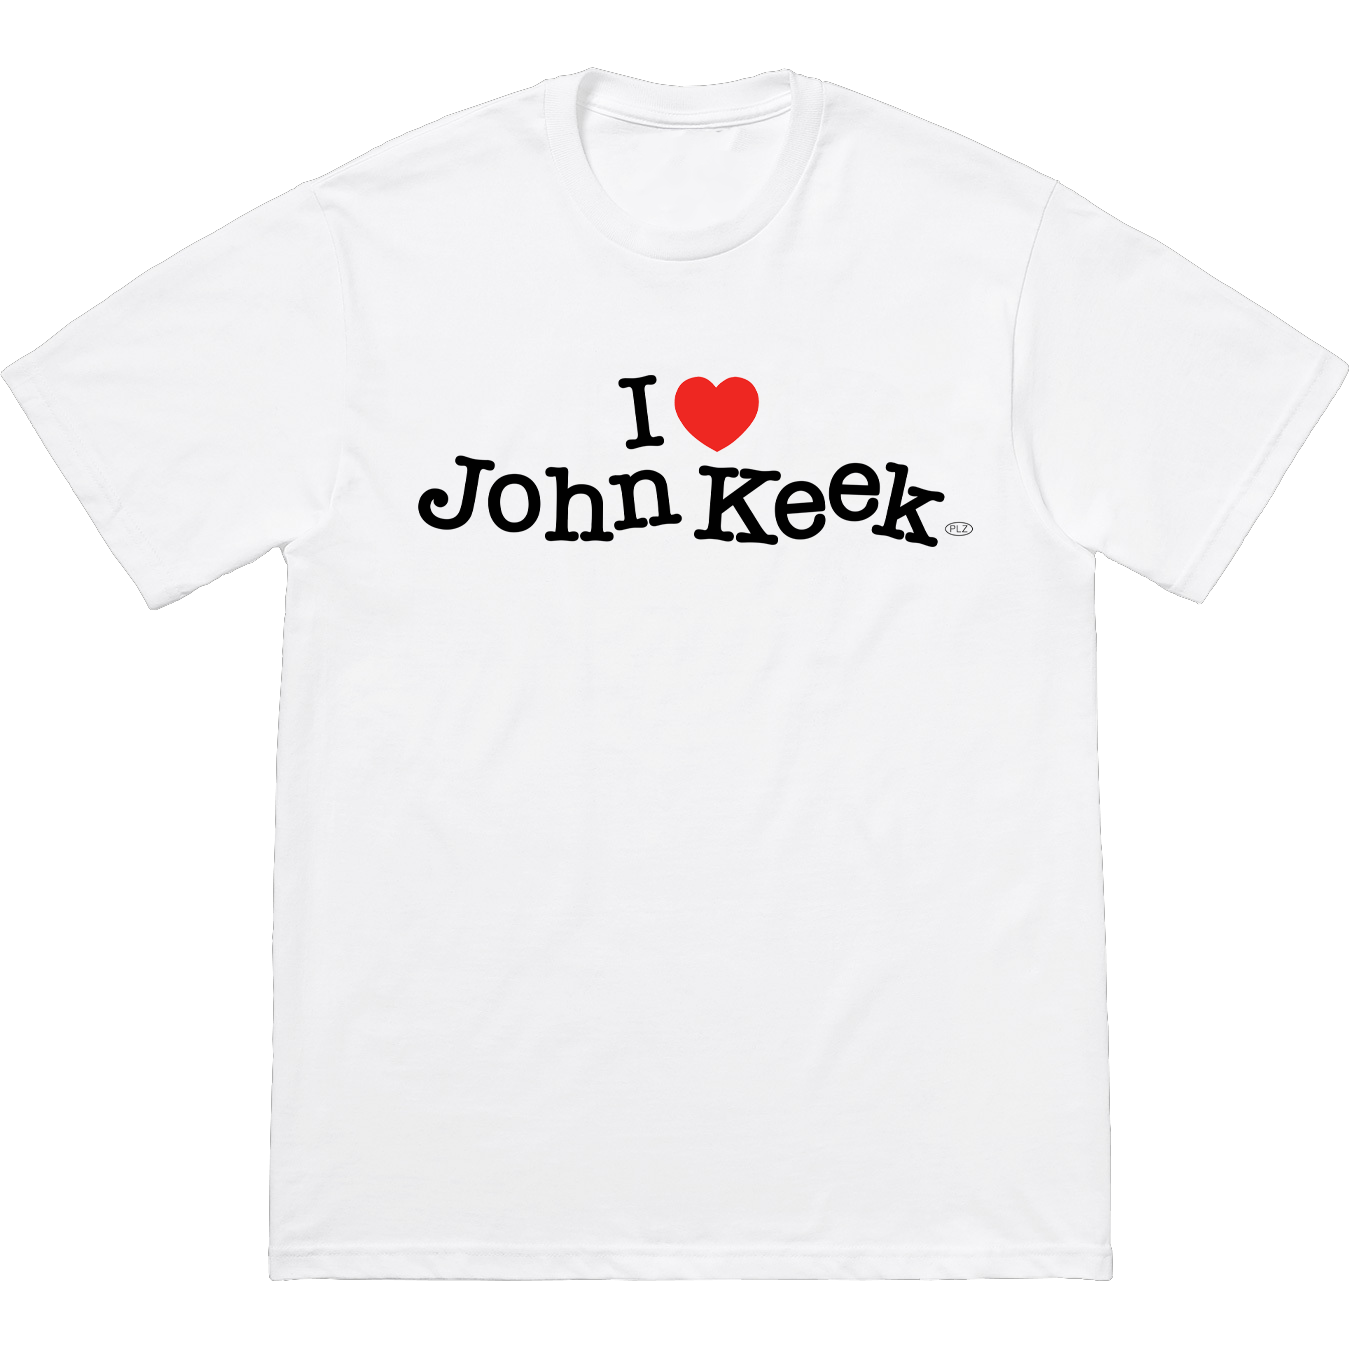 John Keek - Heart T-Shirt